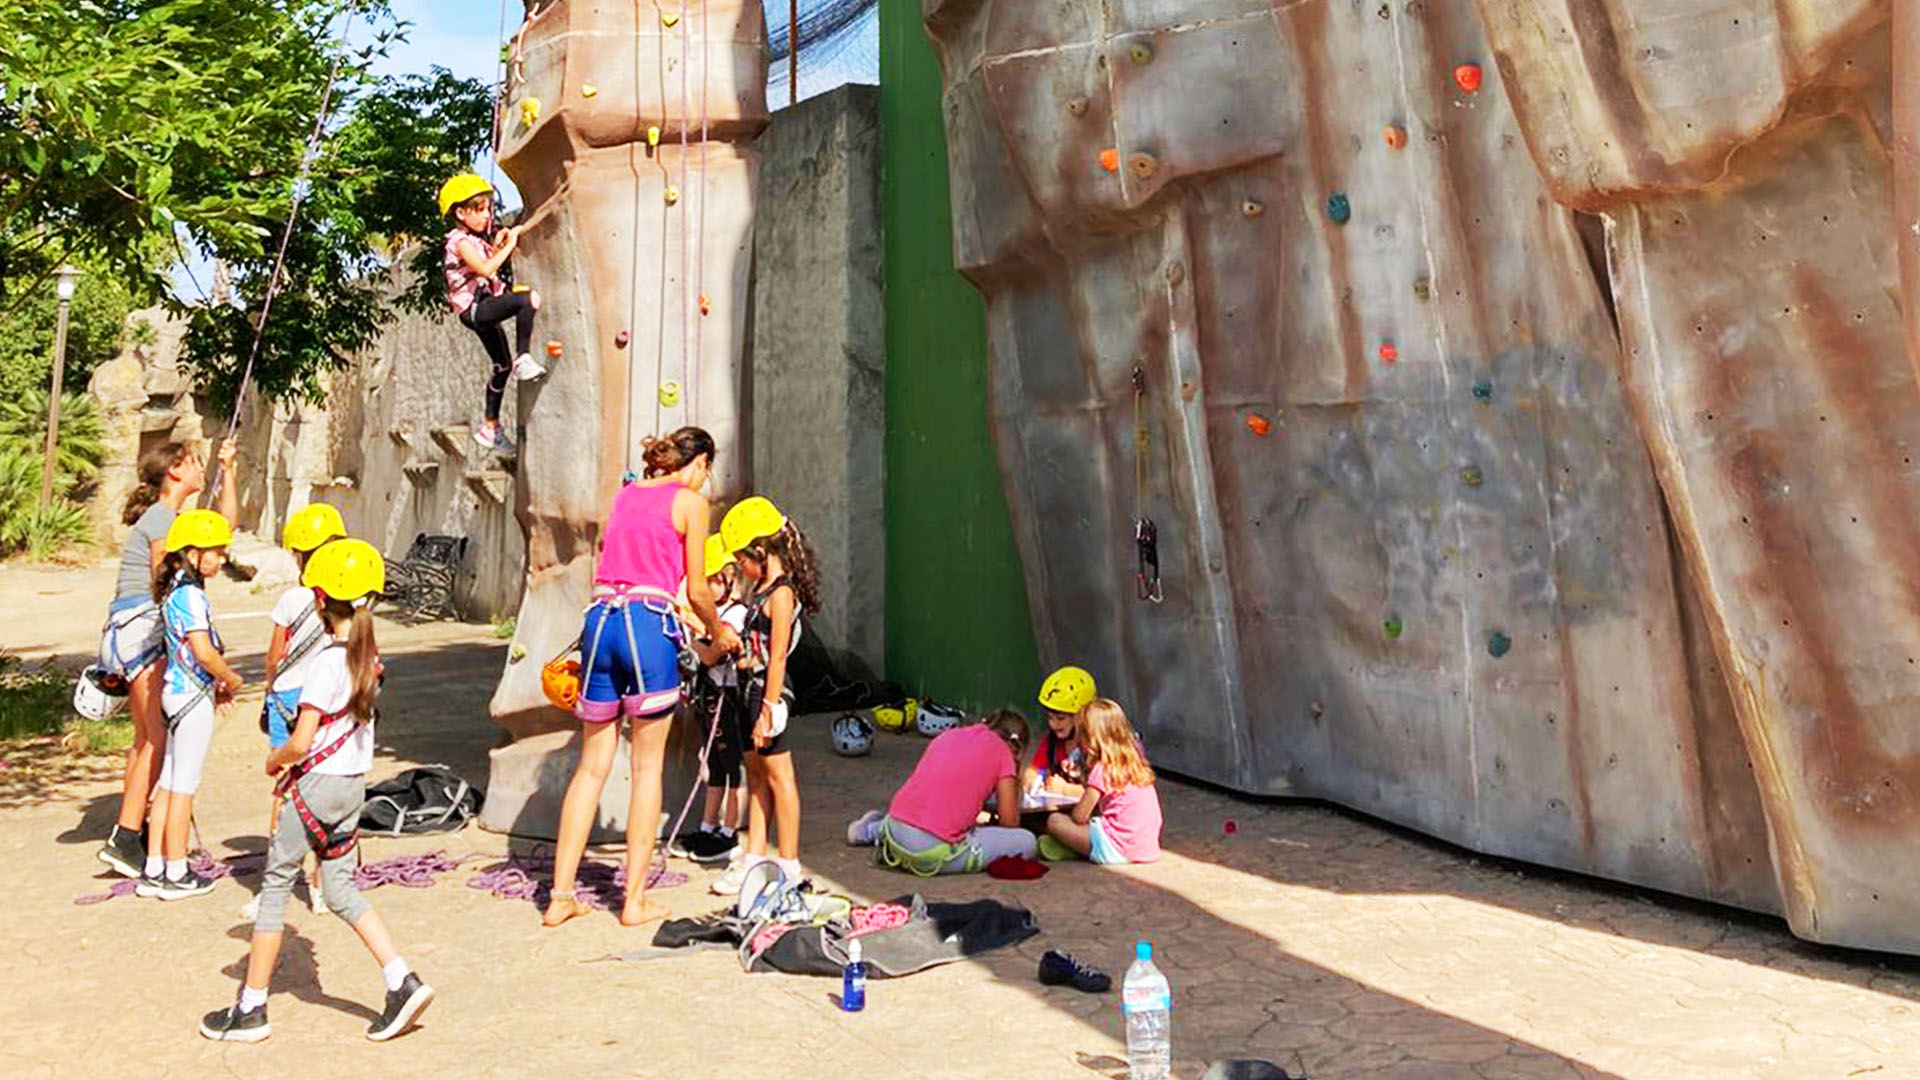 El Club Alpino Ama Dablam, dará por finalizados los talleres de escalada infantiles